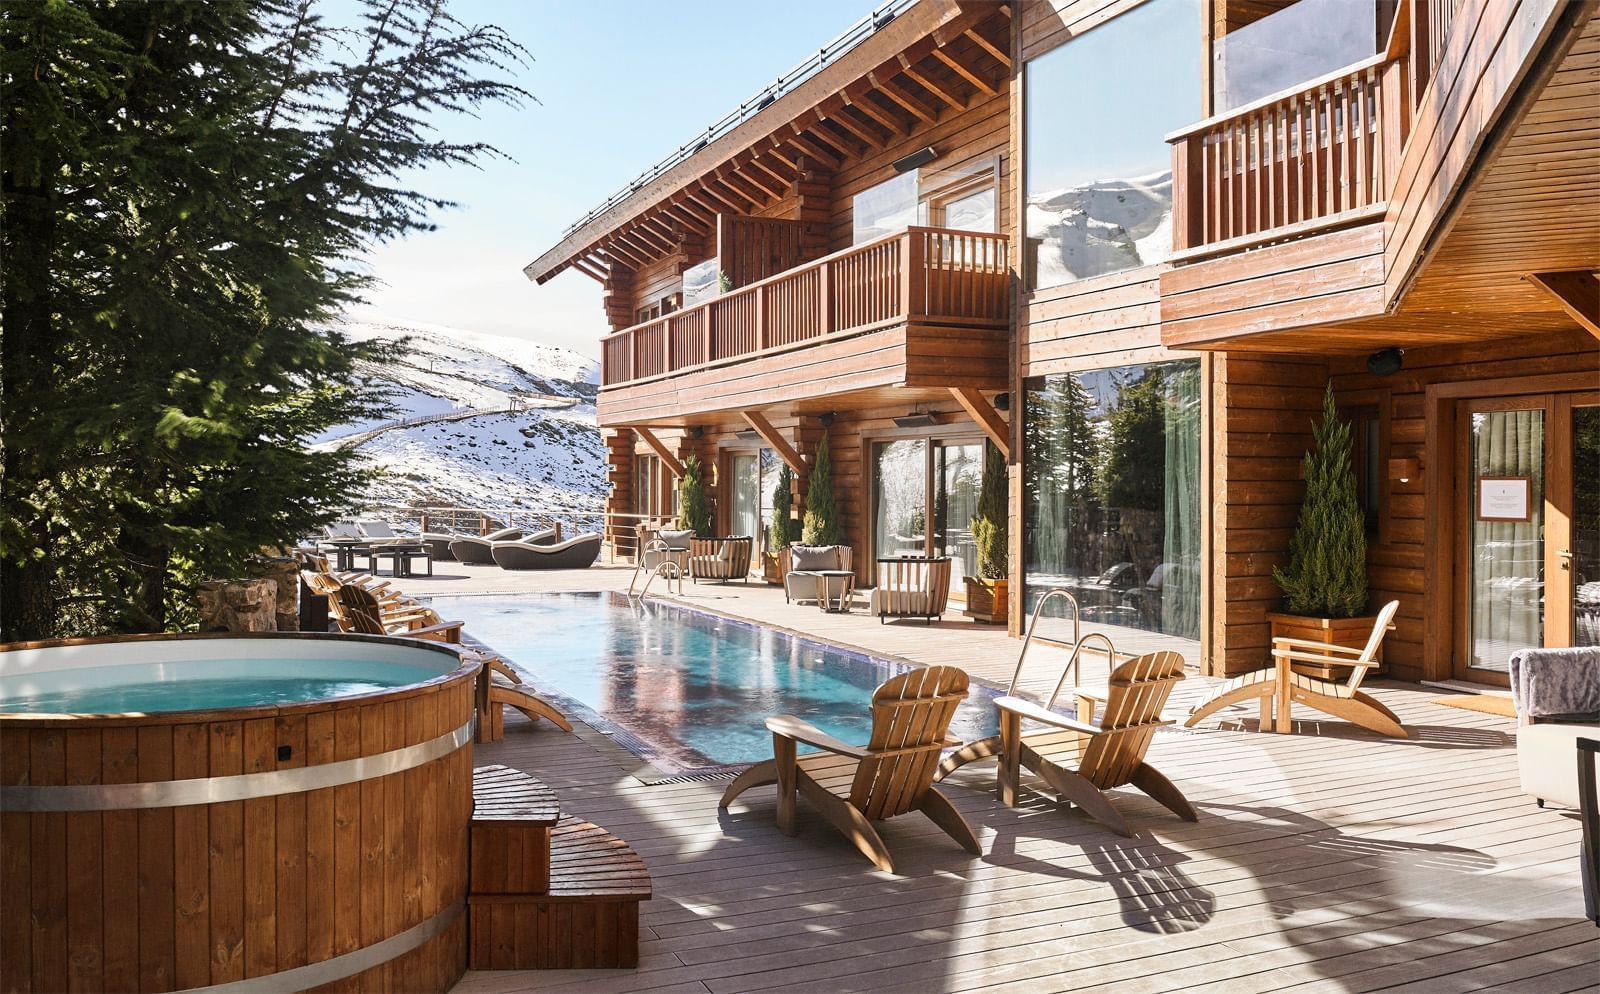 Outdoor heated pool in Sierra Nevada at El Lodge hotel